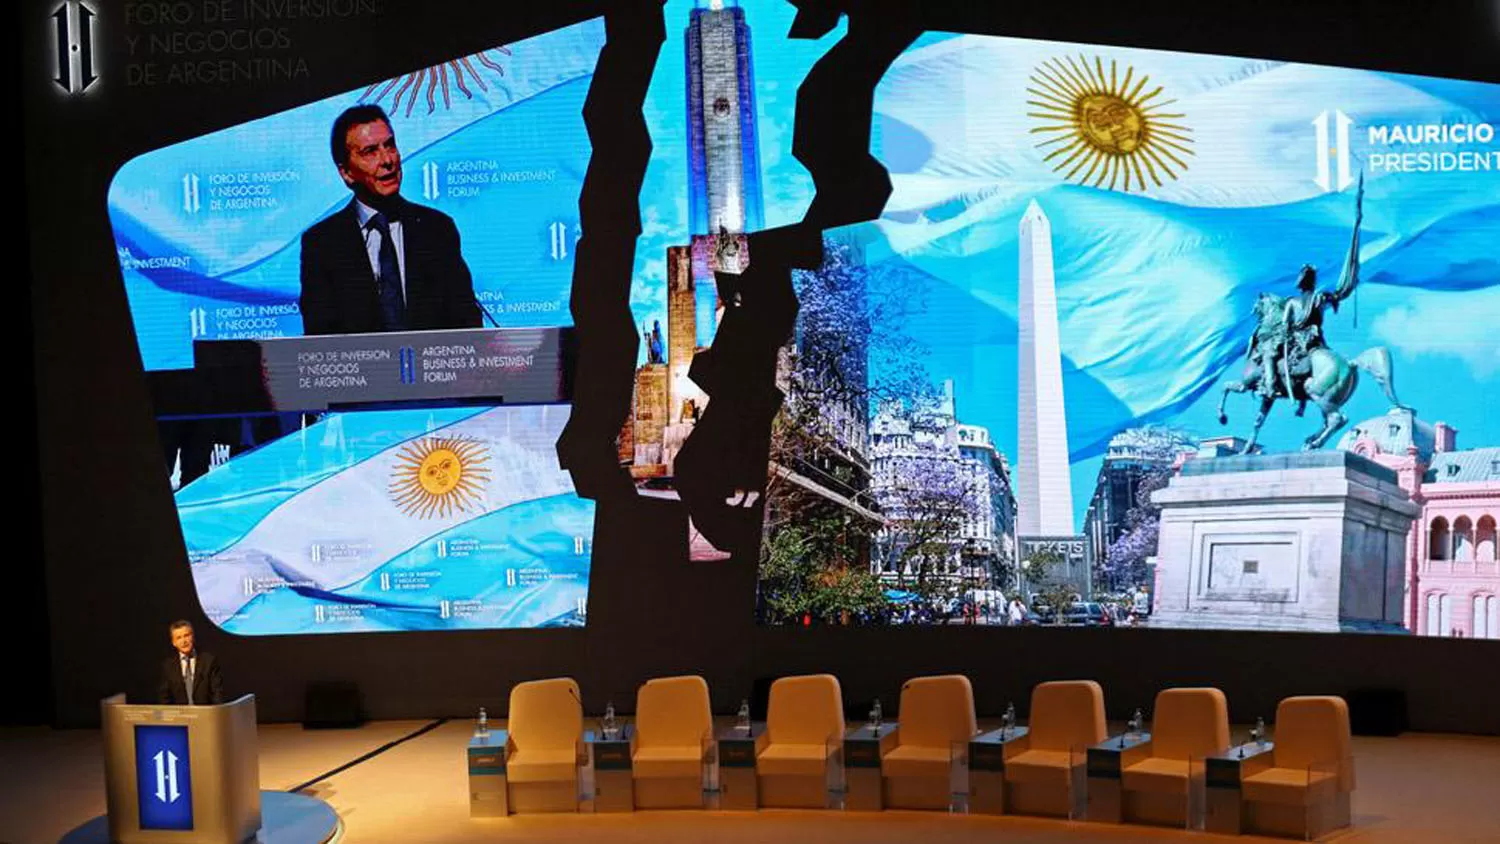 La crisis de Argentina explicada en cinco imágenes